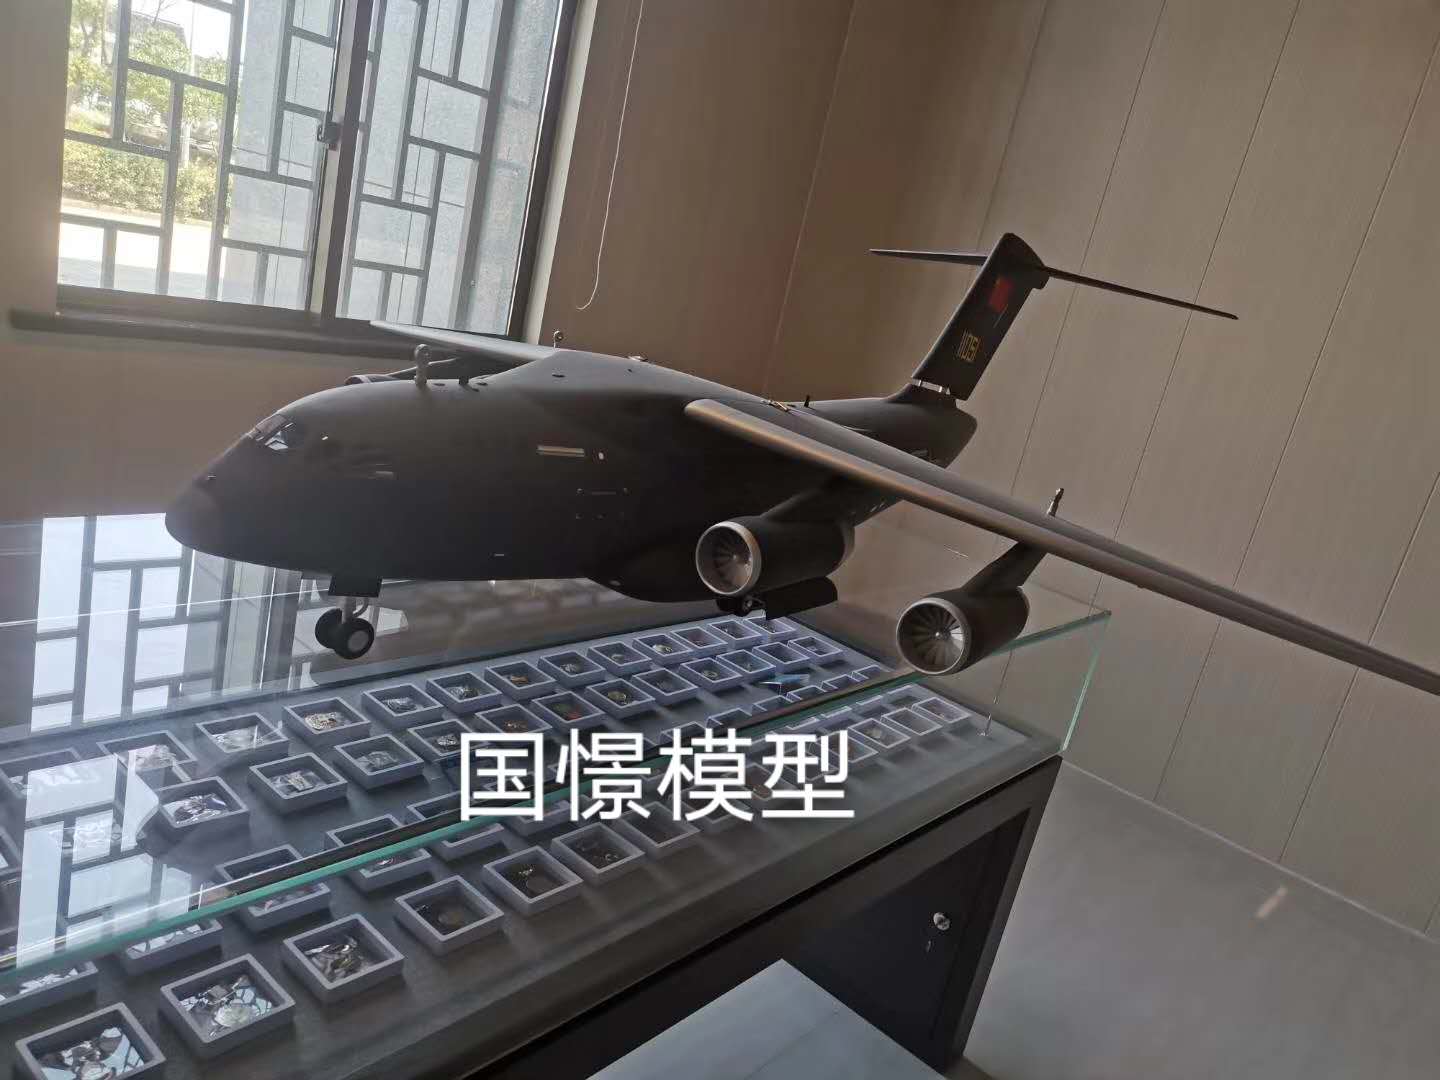 菏泽飞机模型